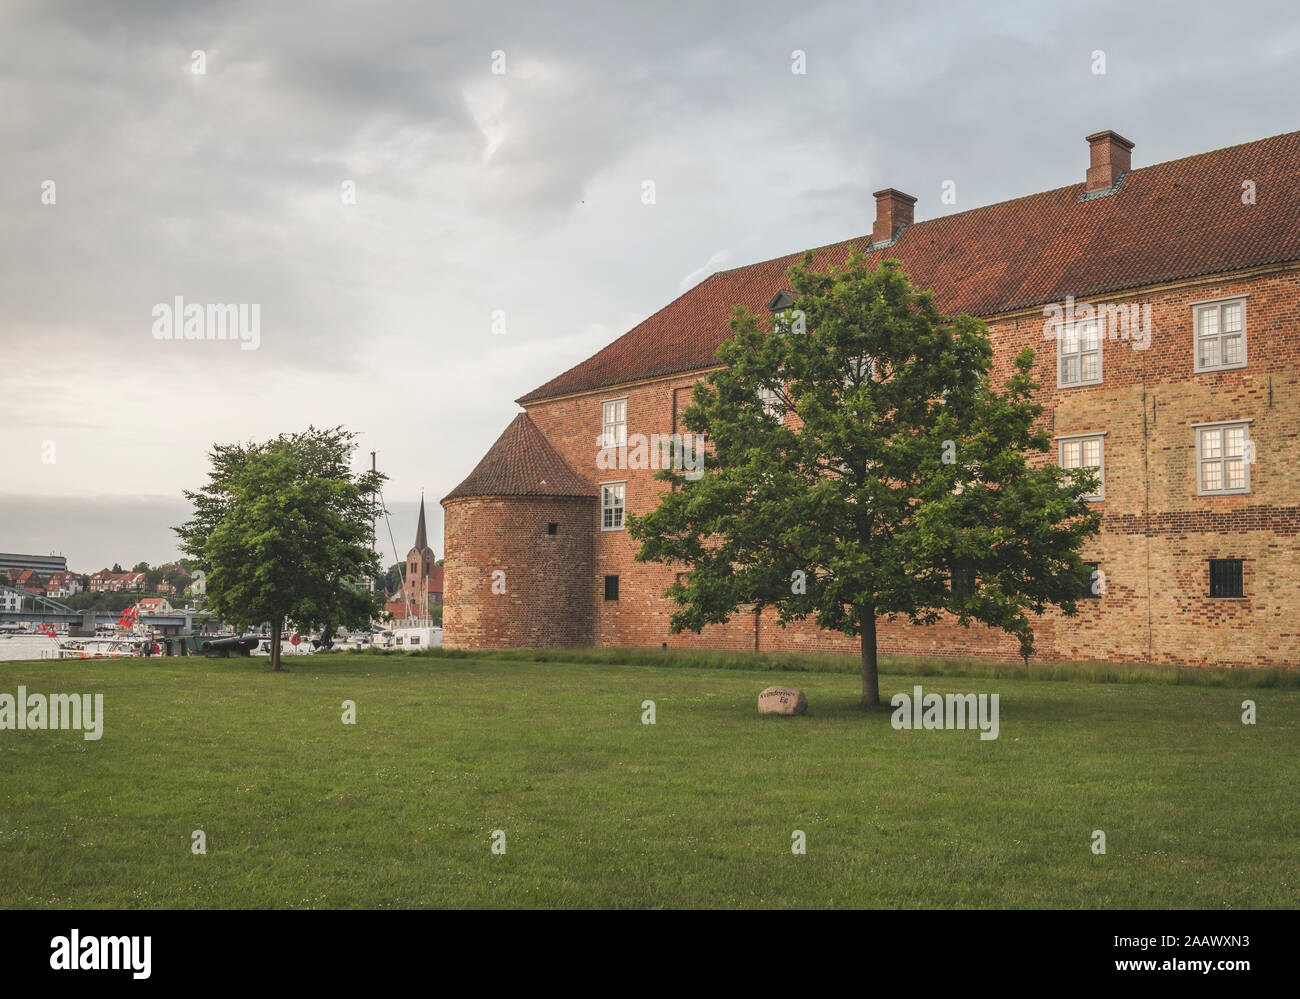 Dänemark, Sonderborg, Schloss Sonderborg an bewölkten Tag gesehen Stockfoto